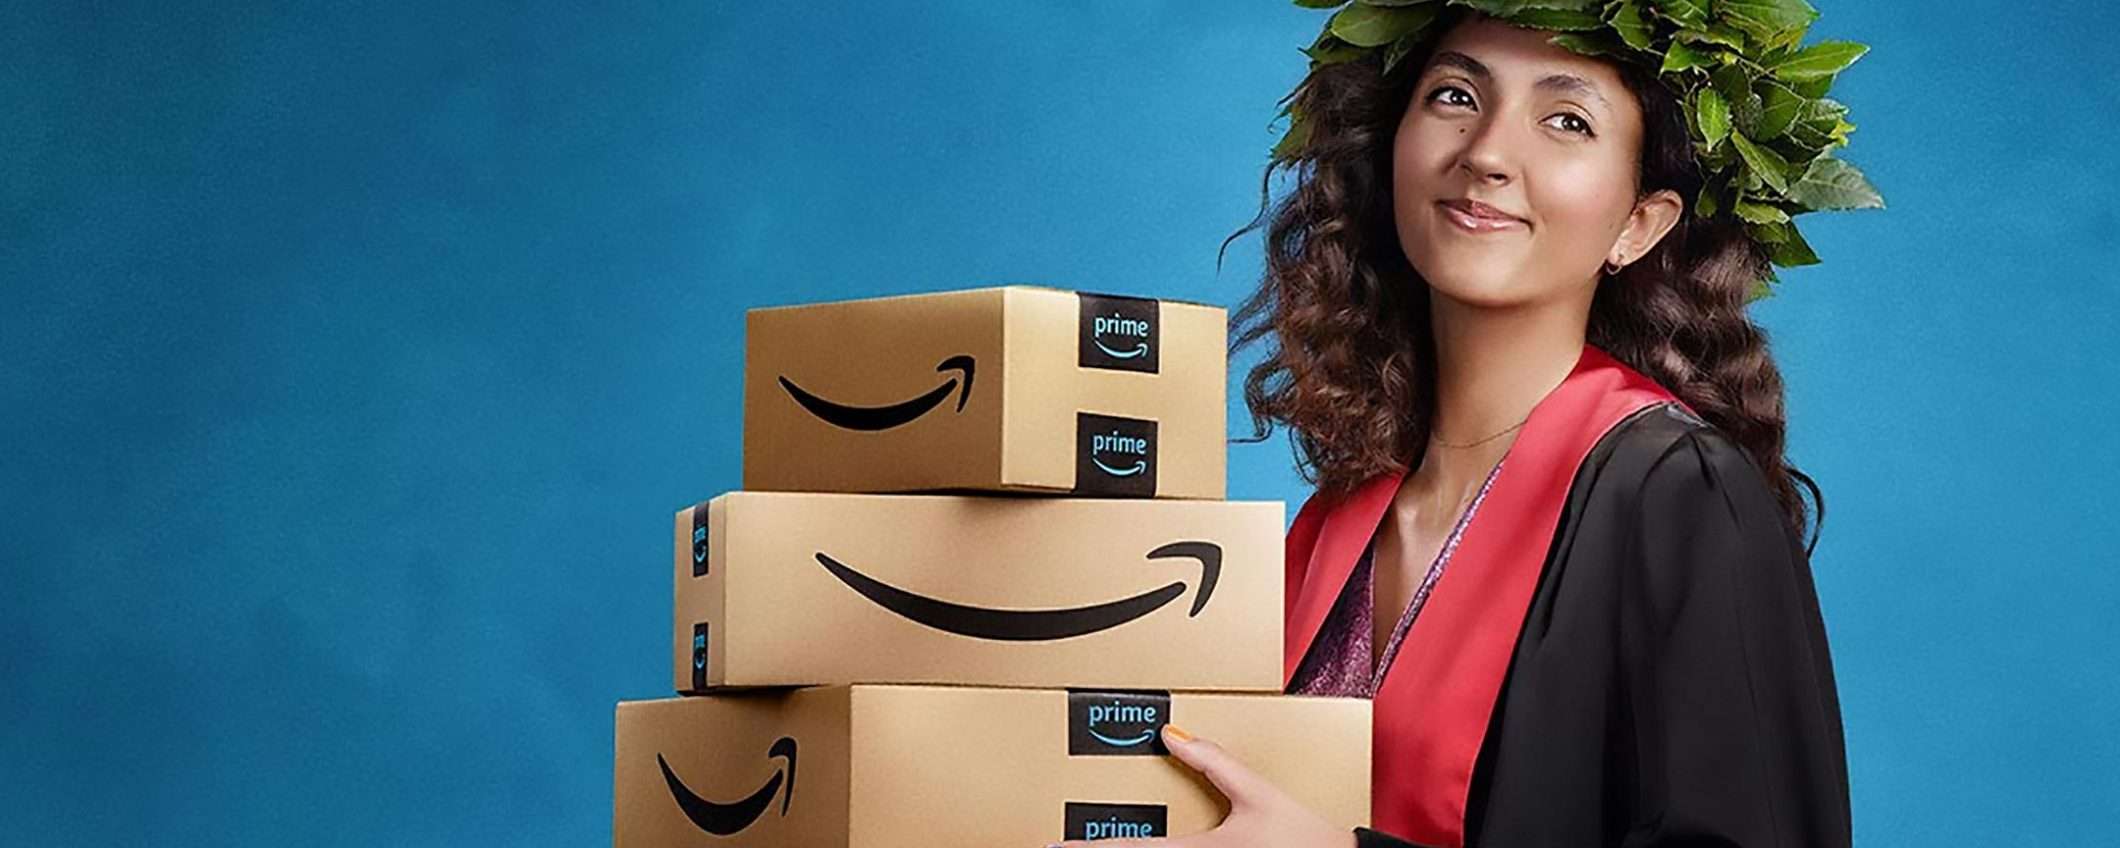 Amazon Prime Student è gratis per 90 giorni